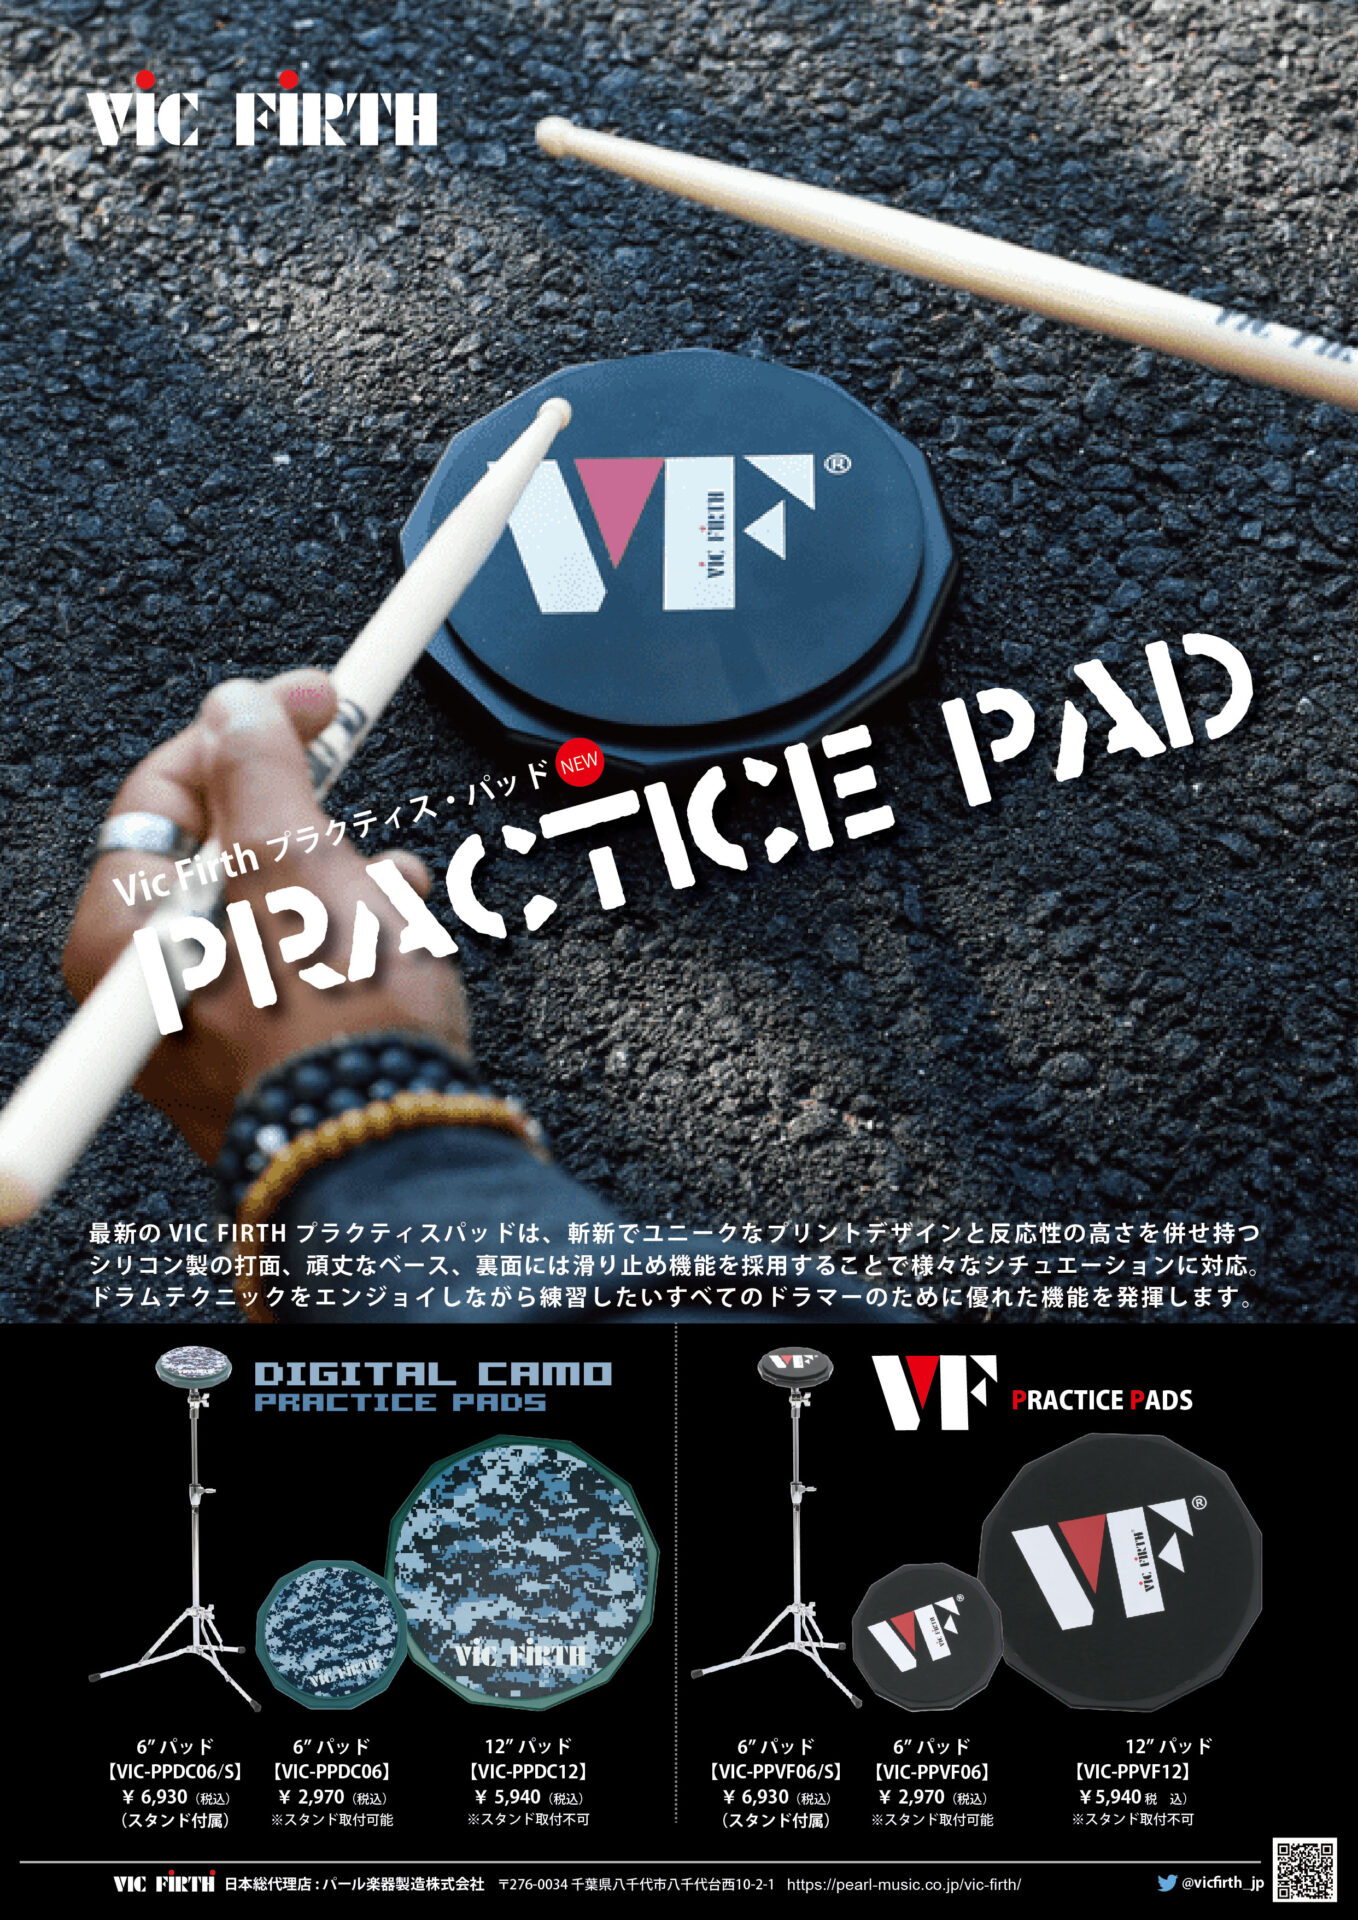 ○日本正規品○ VIC FIRTH VIC-PPVF06 6 inch VF Practice Pad idvn.com.vn